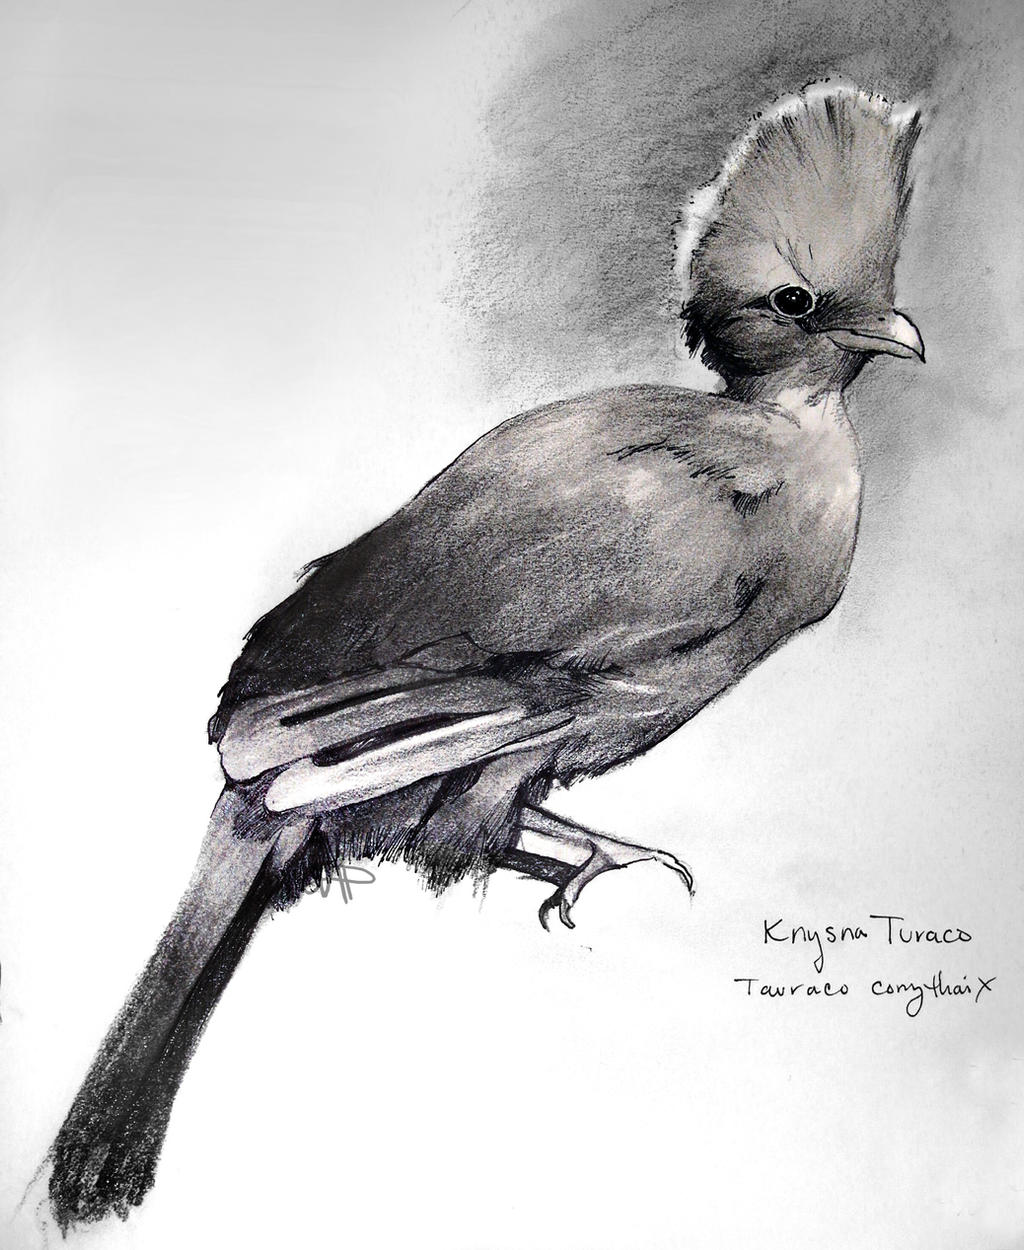 Knysna Turaco (Tauraco corythaix)